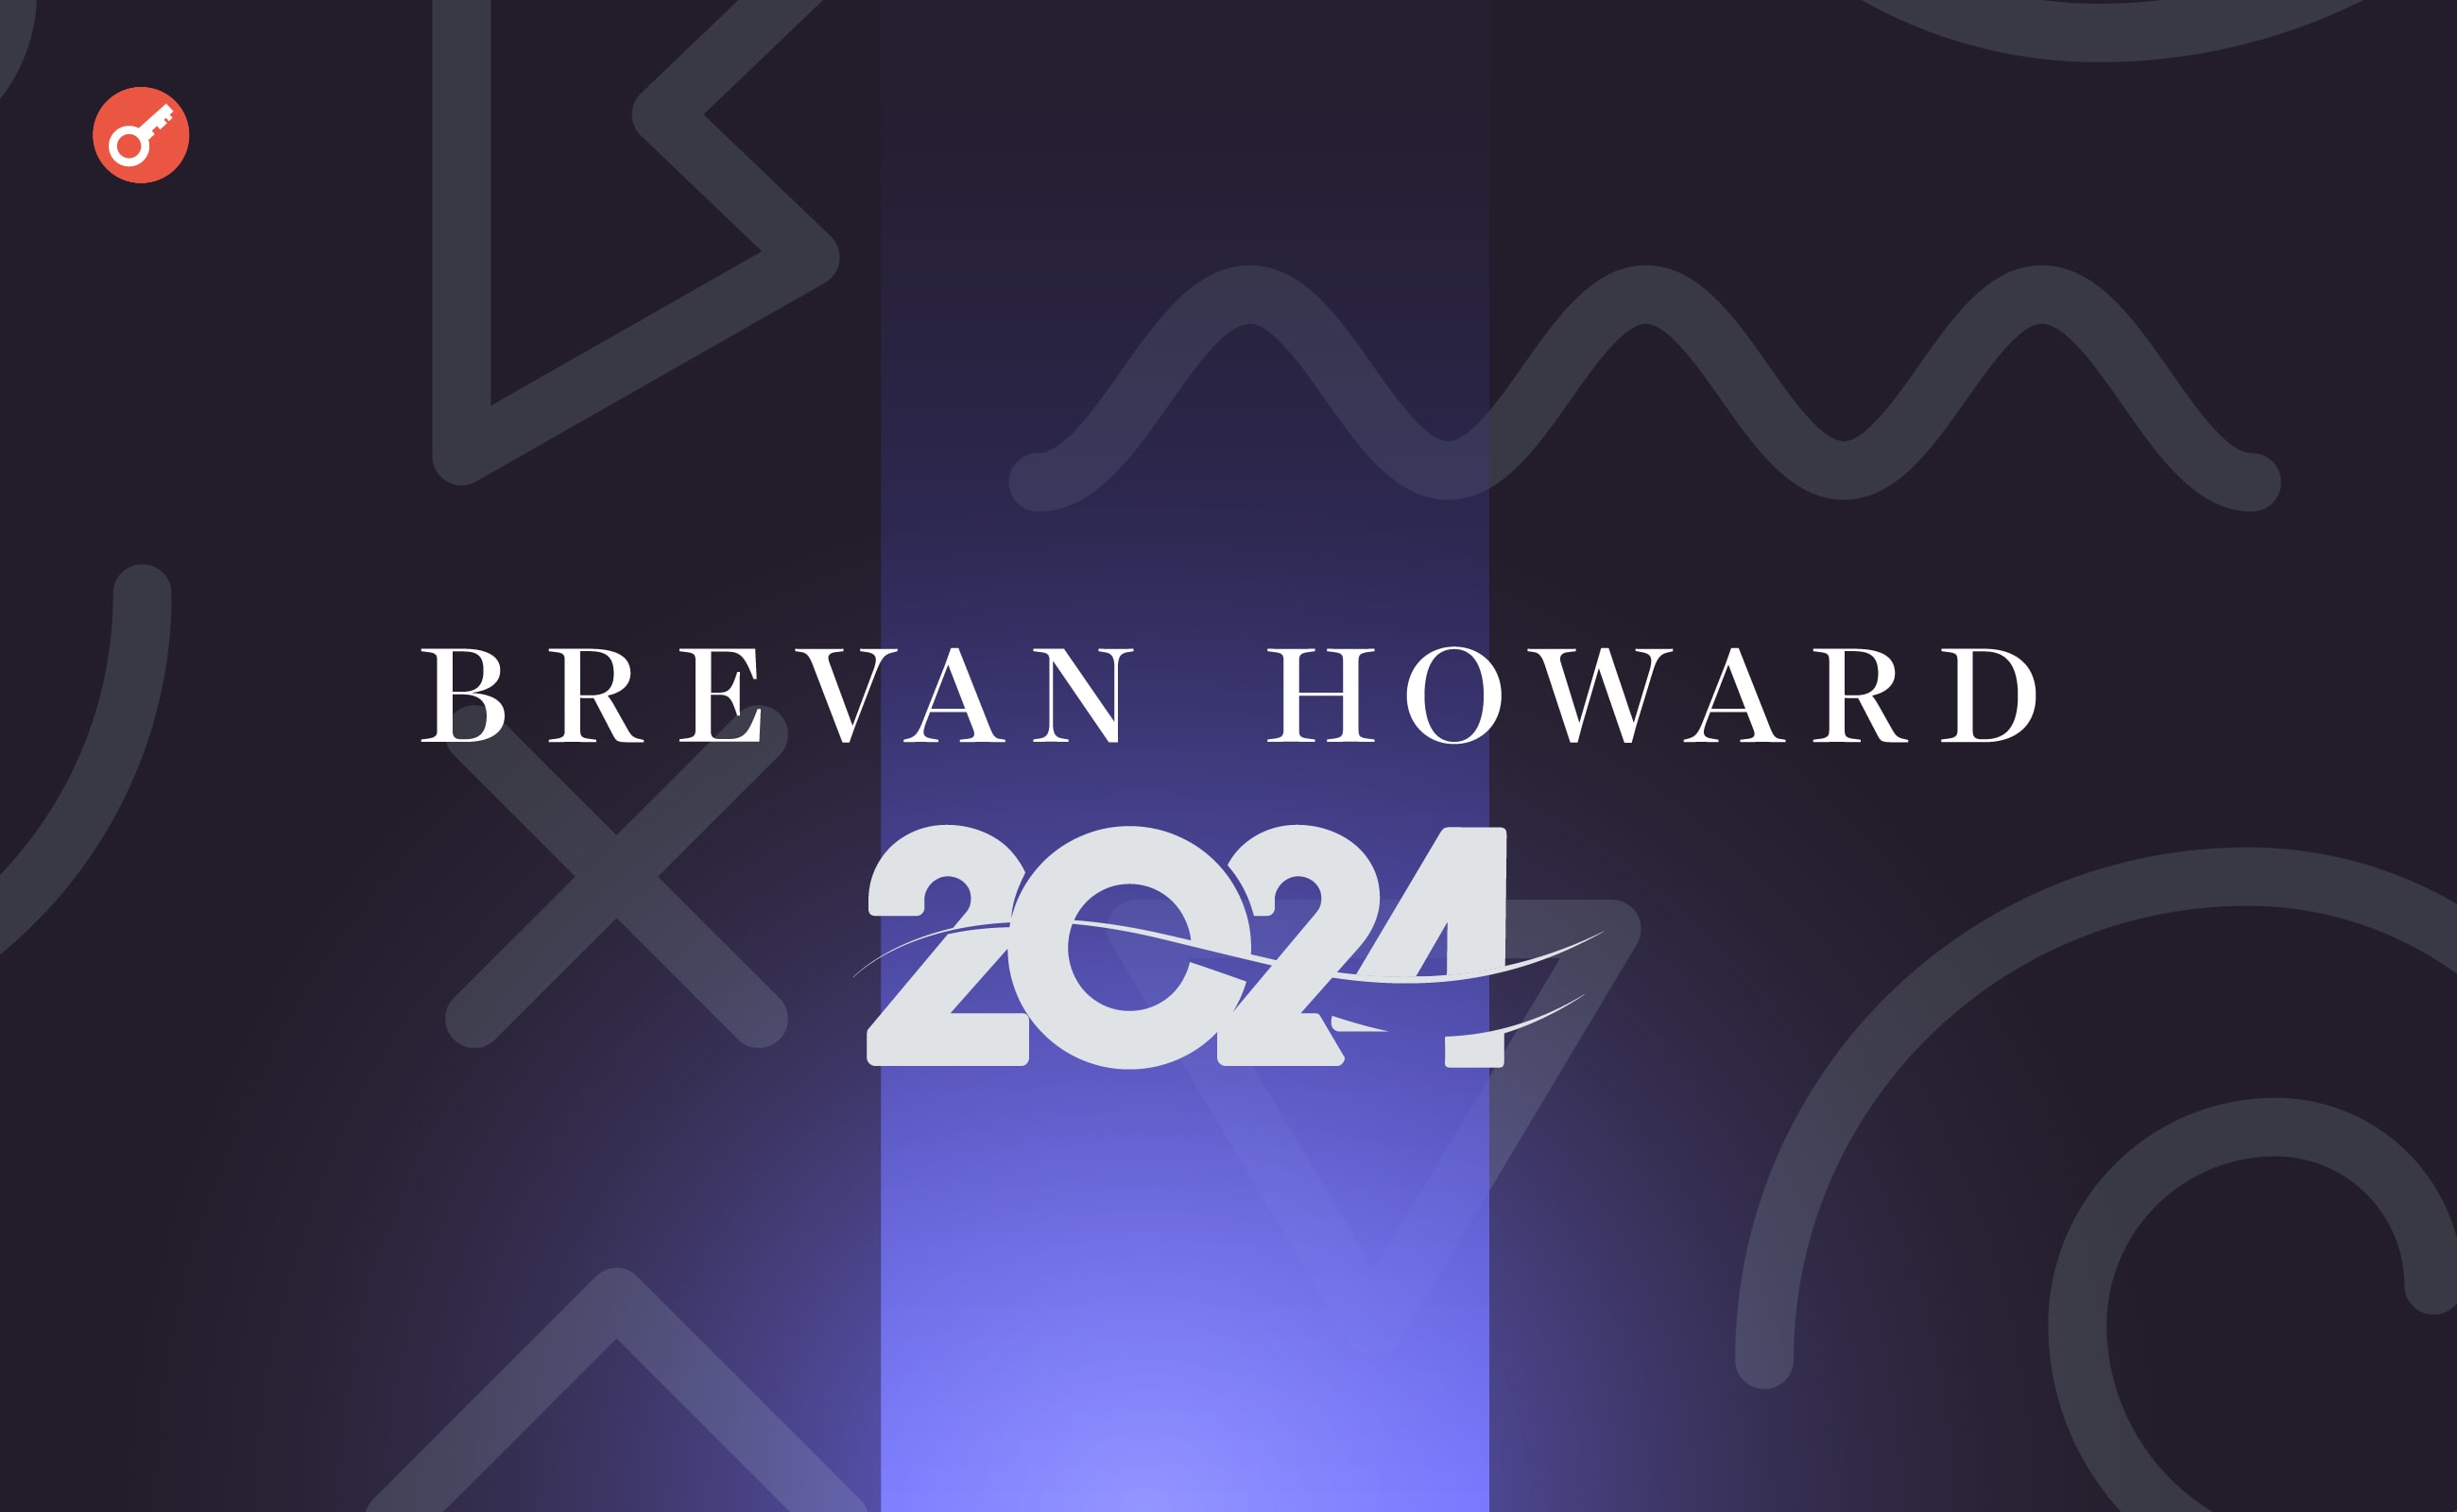 Експерти Brevan Howard поділилися прогнозом щодо крипторинку на 2024 рік. Головний колаж новини.